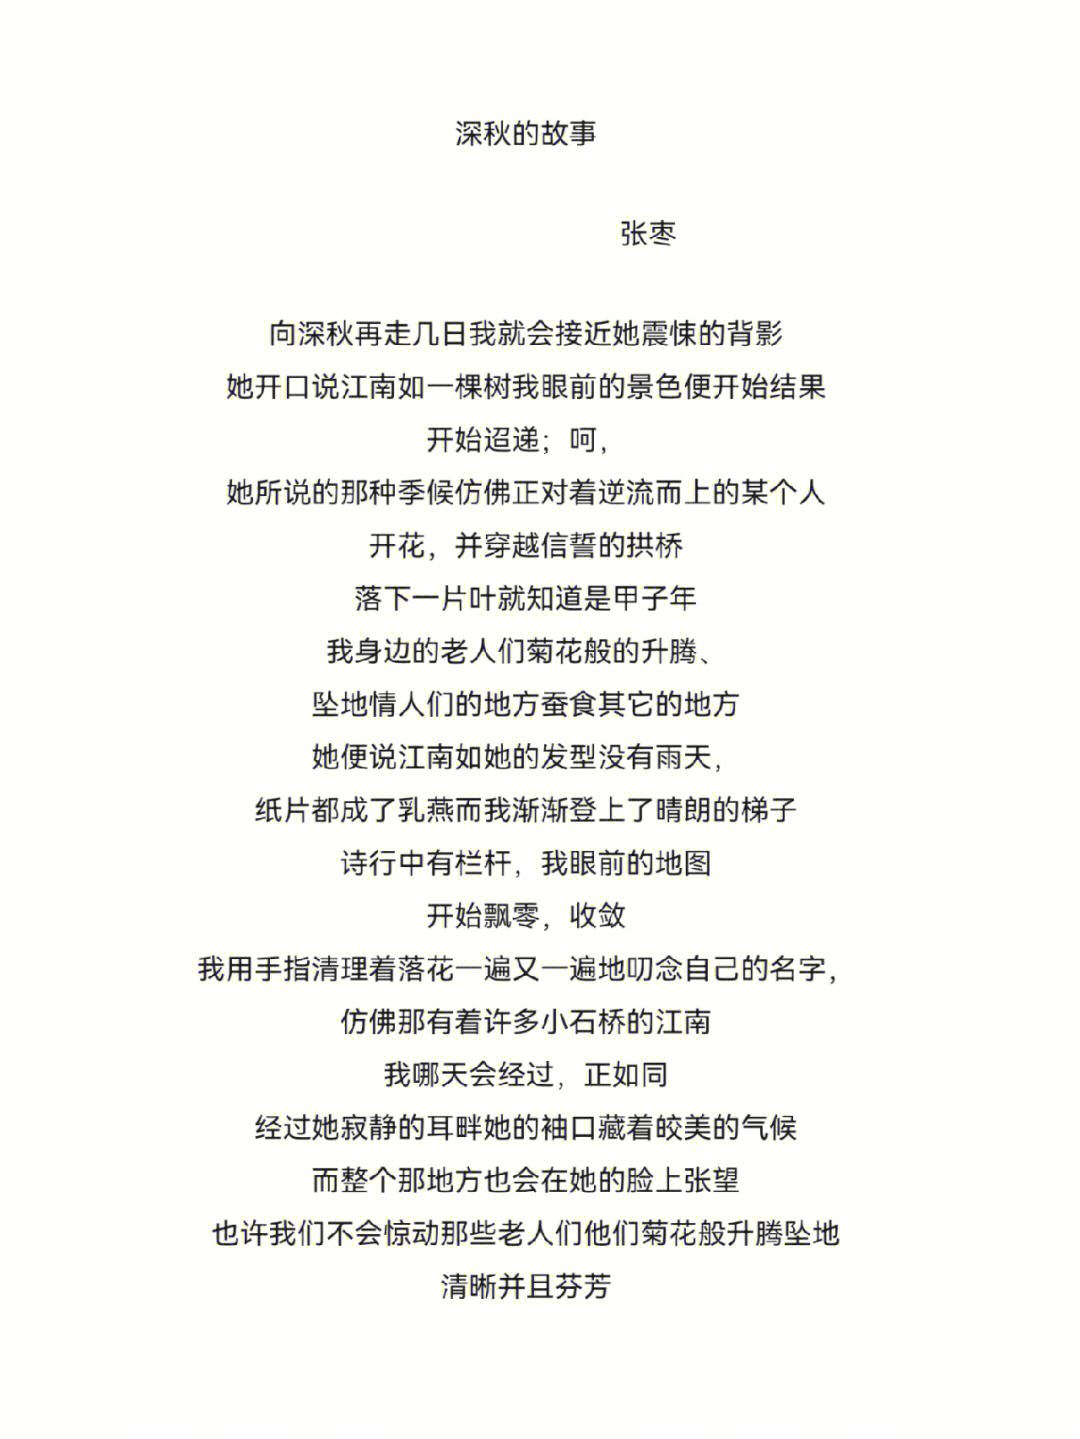 张枣的诗《镜中》手稿图片